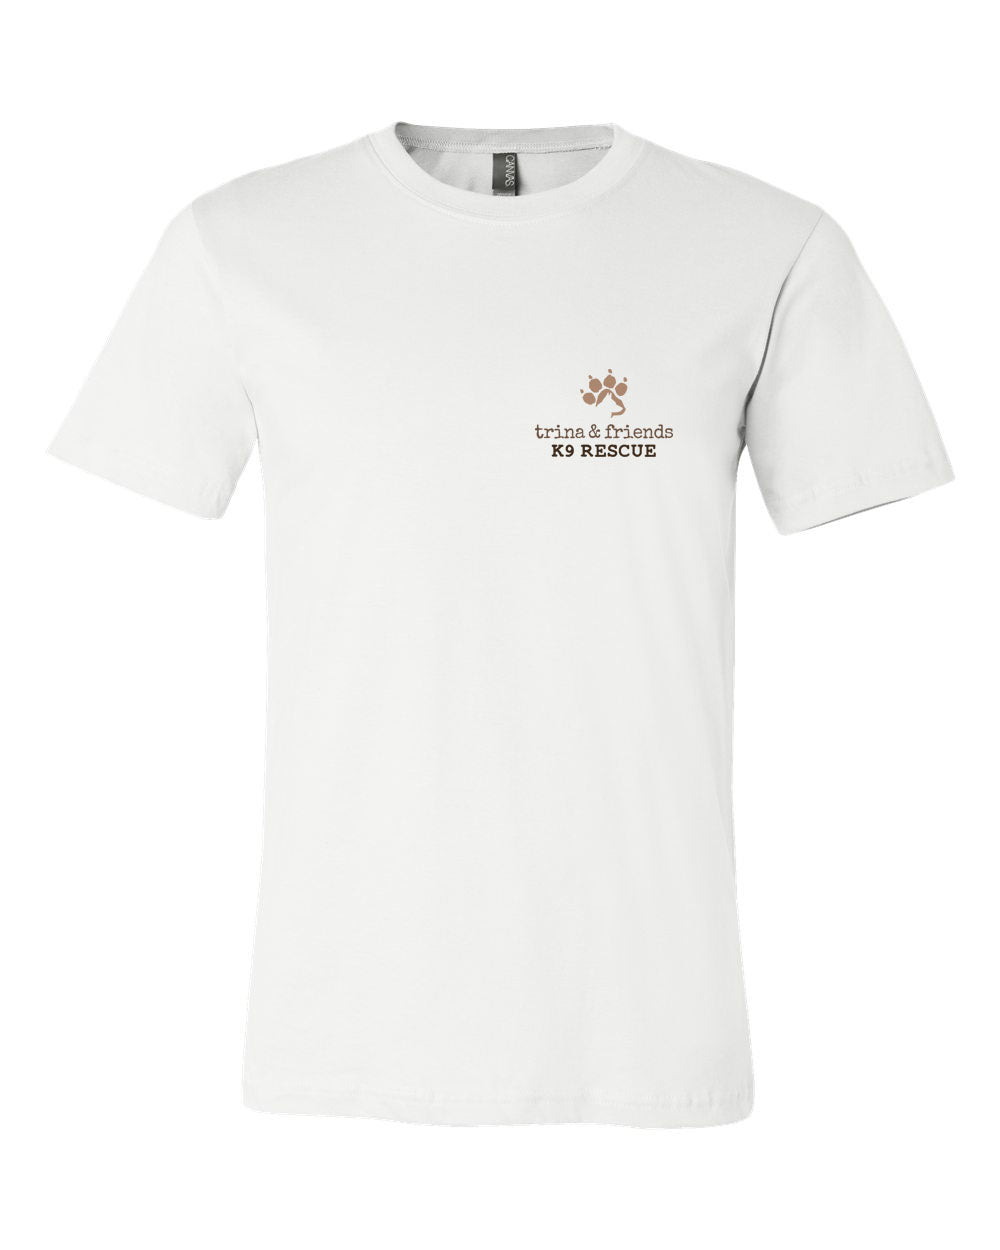 Friends 5 T-Shirt Trina design &